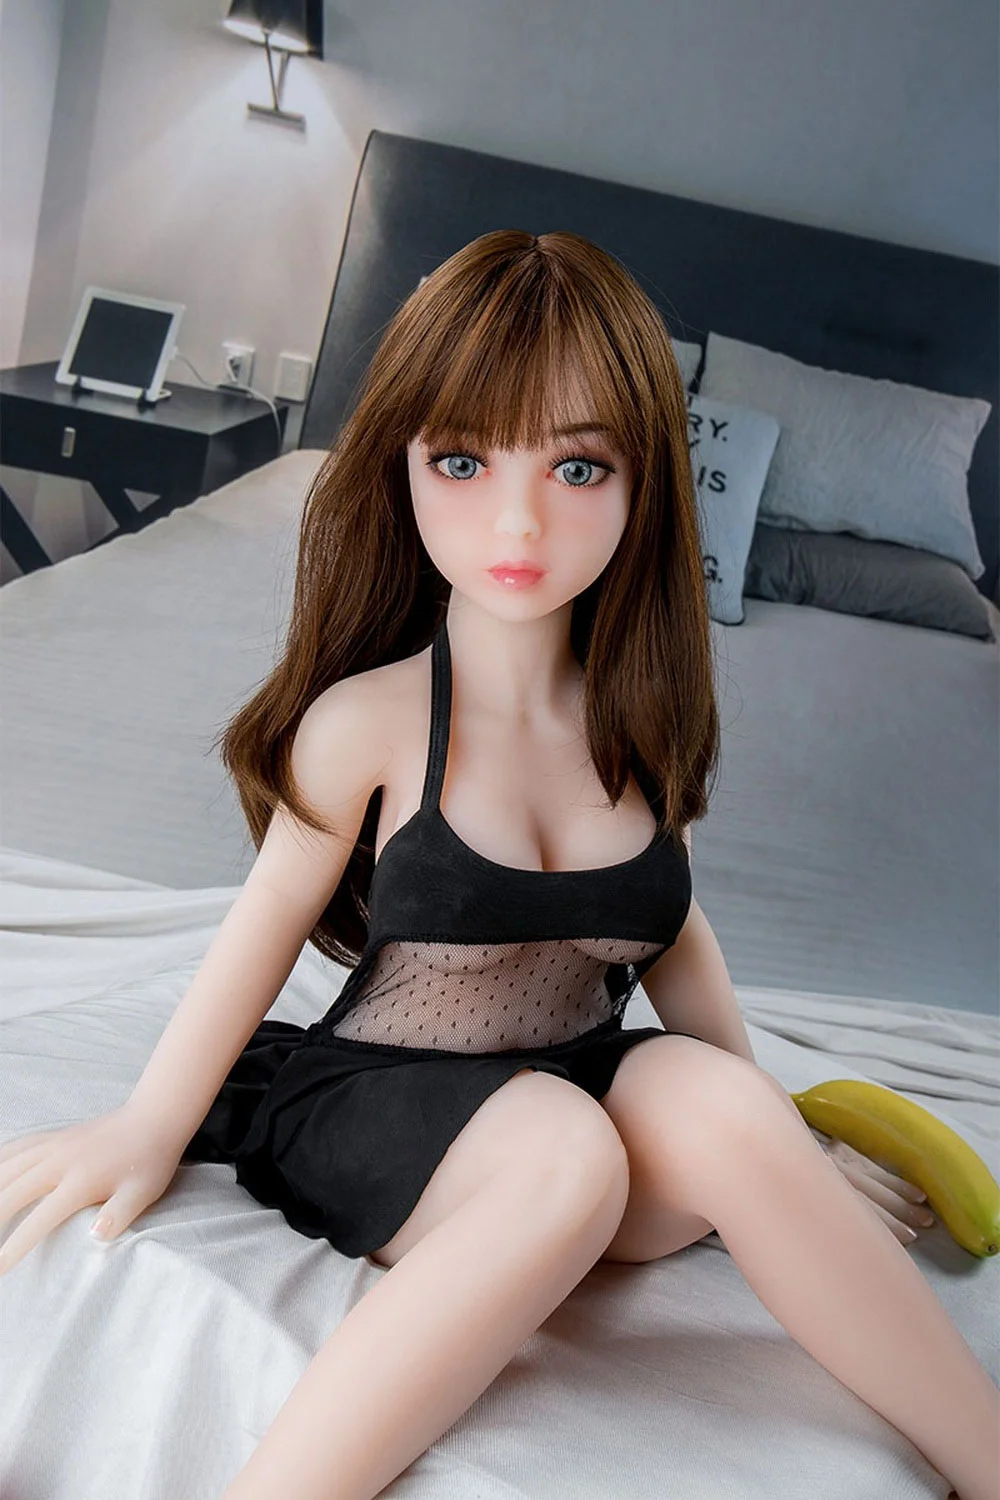 Mini sex doll in black clothes